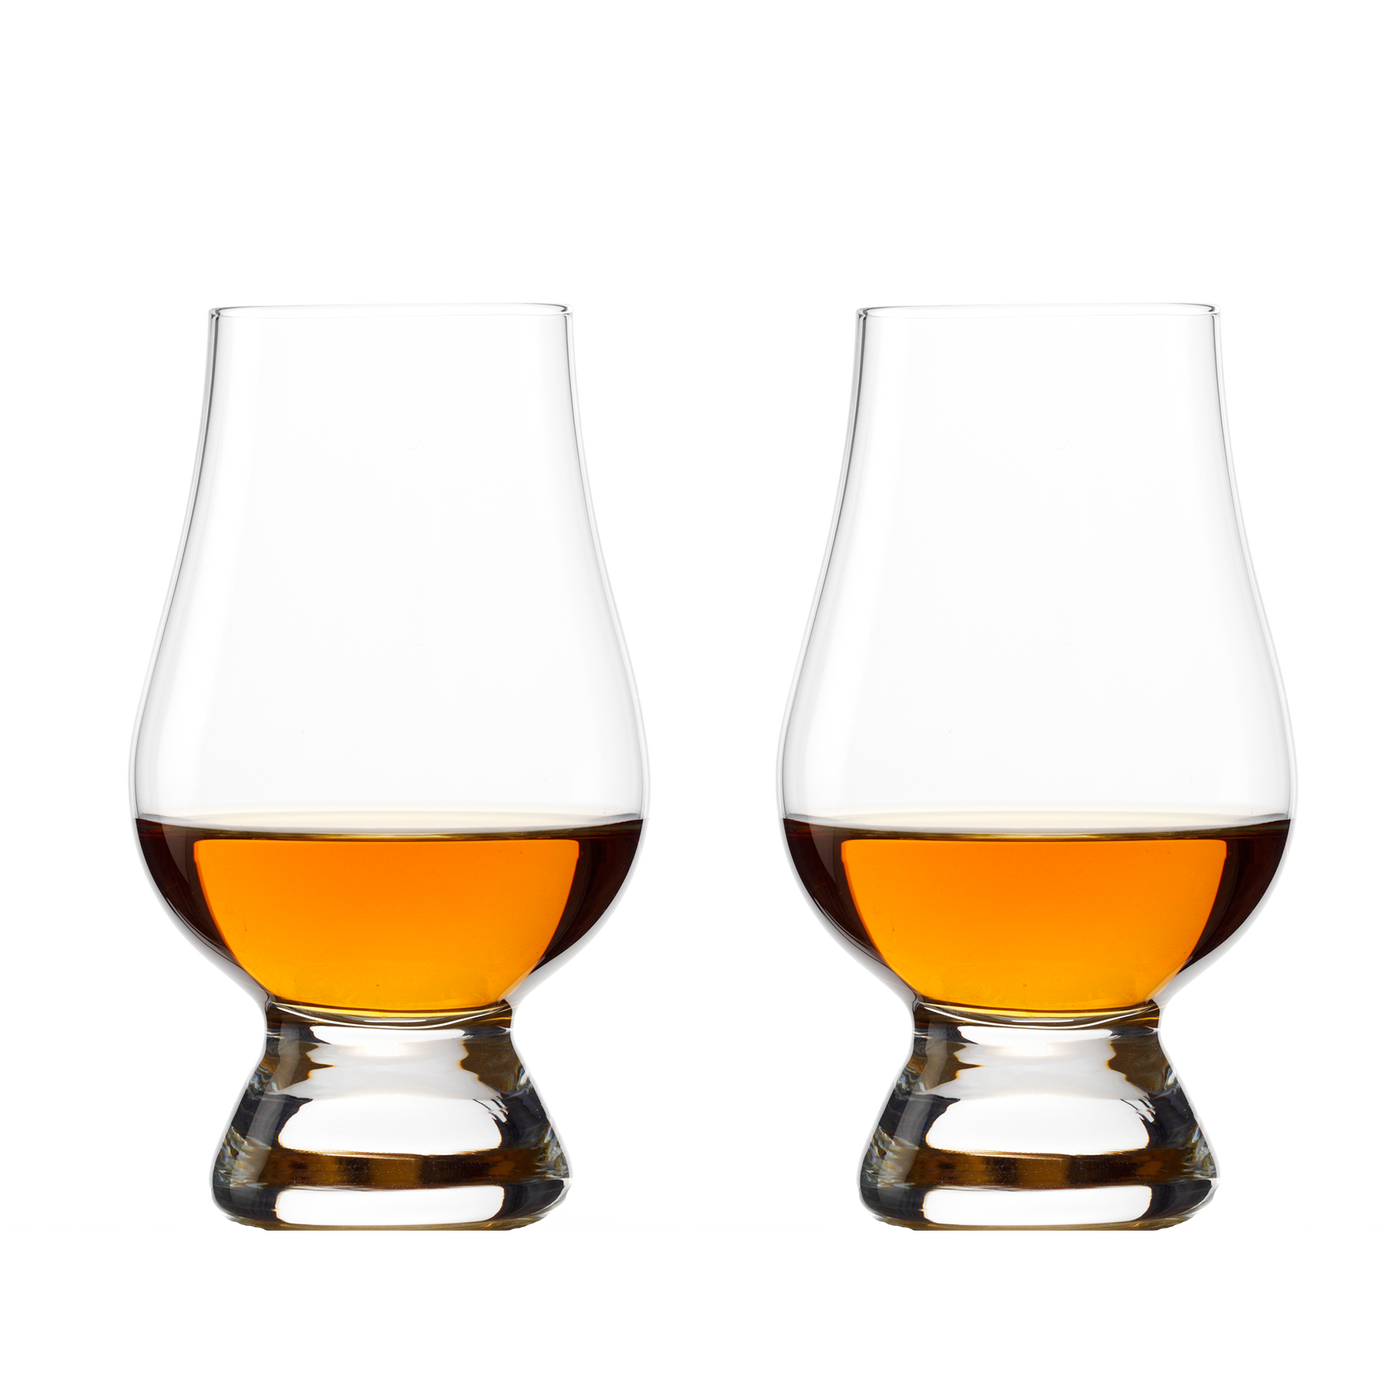 The Glencairn Whisky Glass 6 oz. - Set of two.